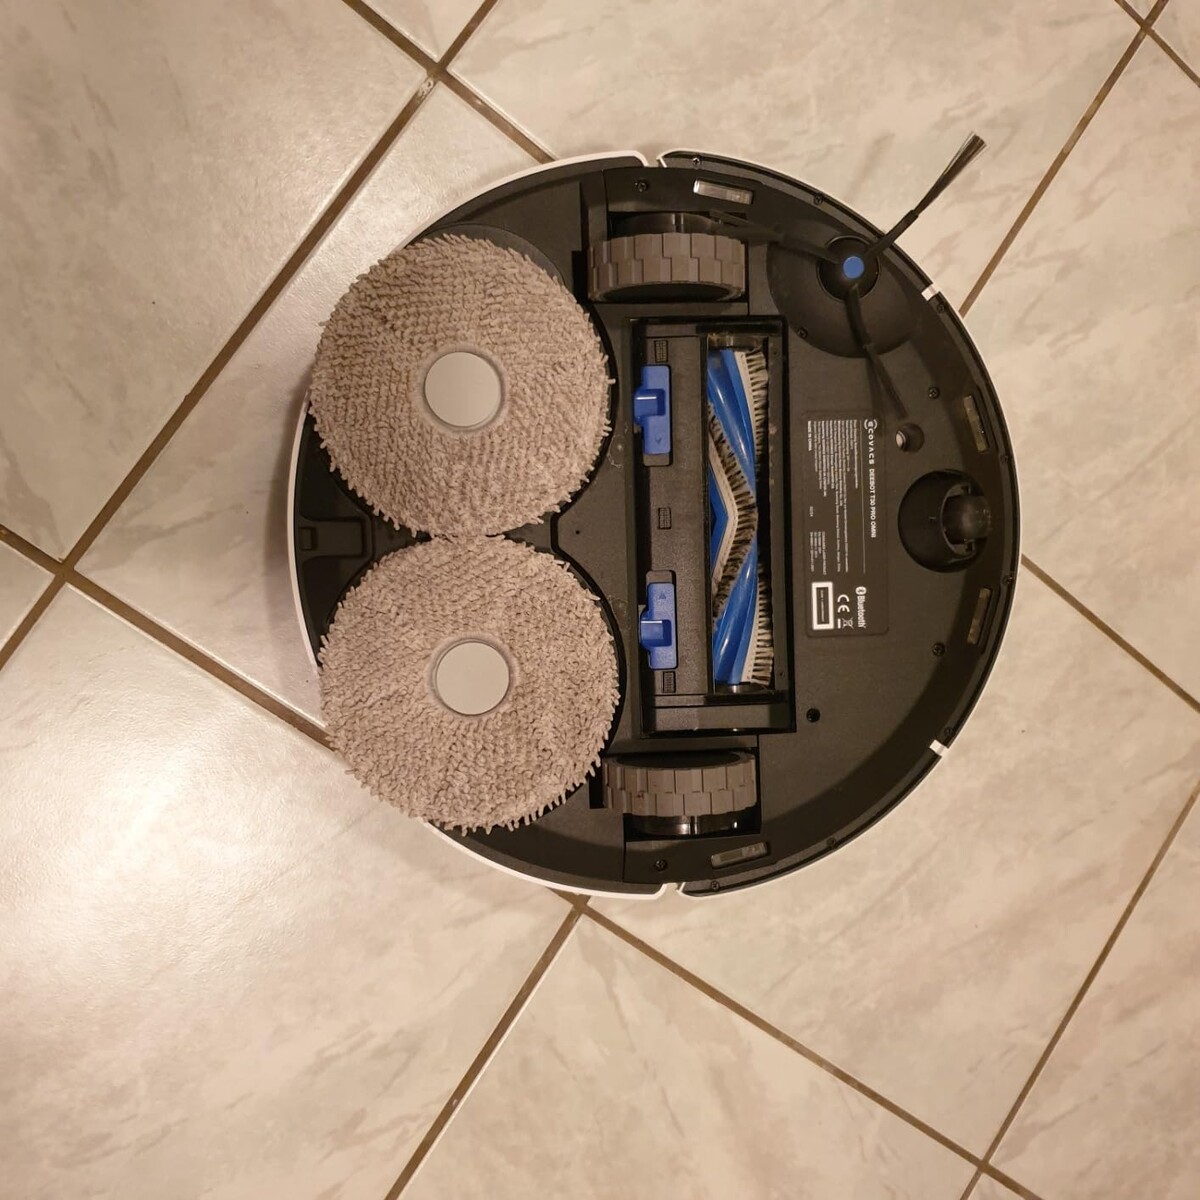 Серия Deebot T30 – одна из наиболее передовых в линейке роботов-пылесосов от компании Ecovacs. Гаджет сочетает удобство, стильный дизайн и современные технологии для уборки.-2